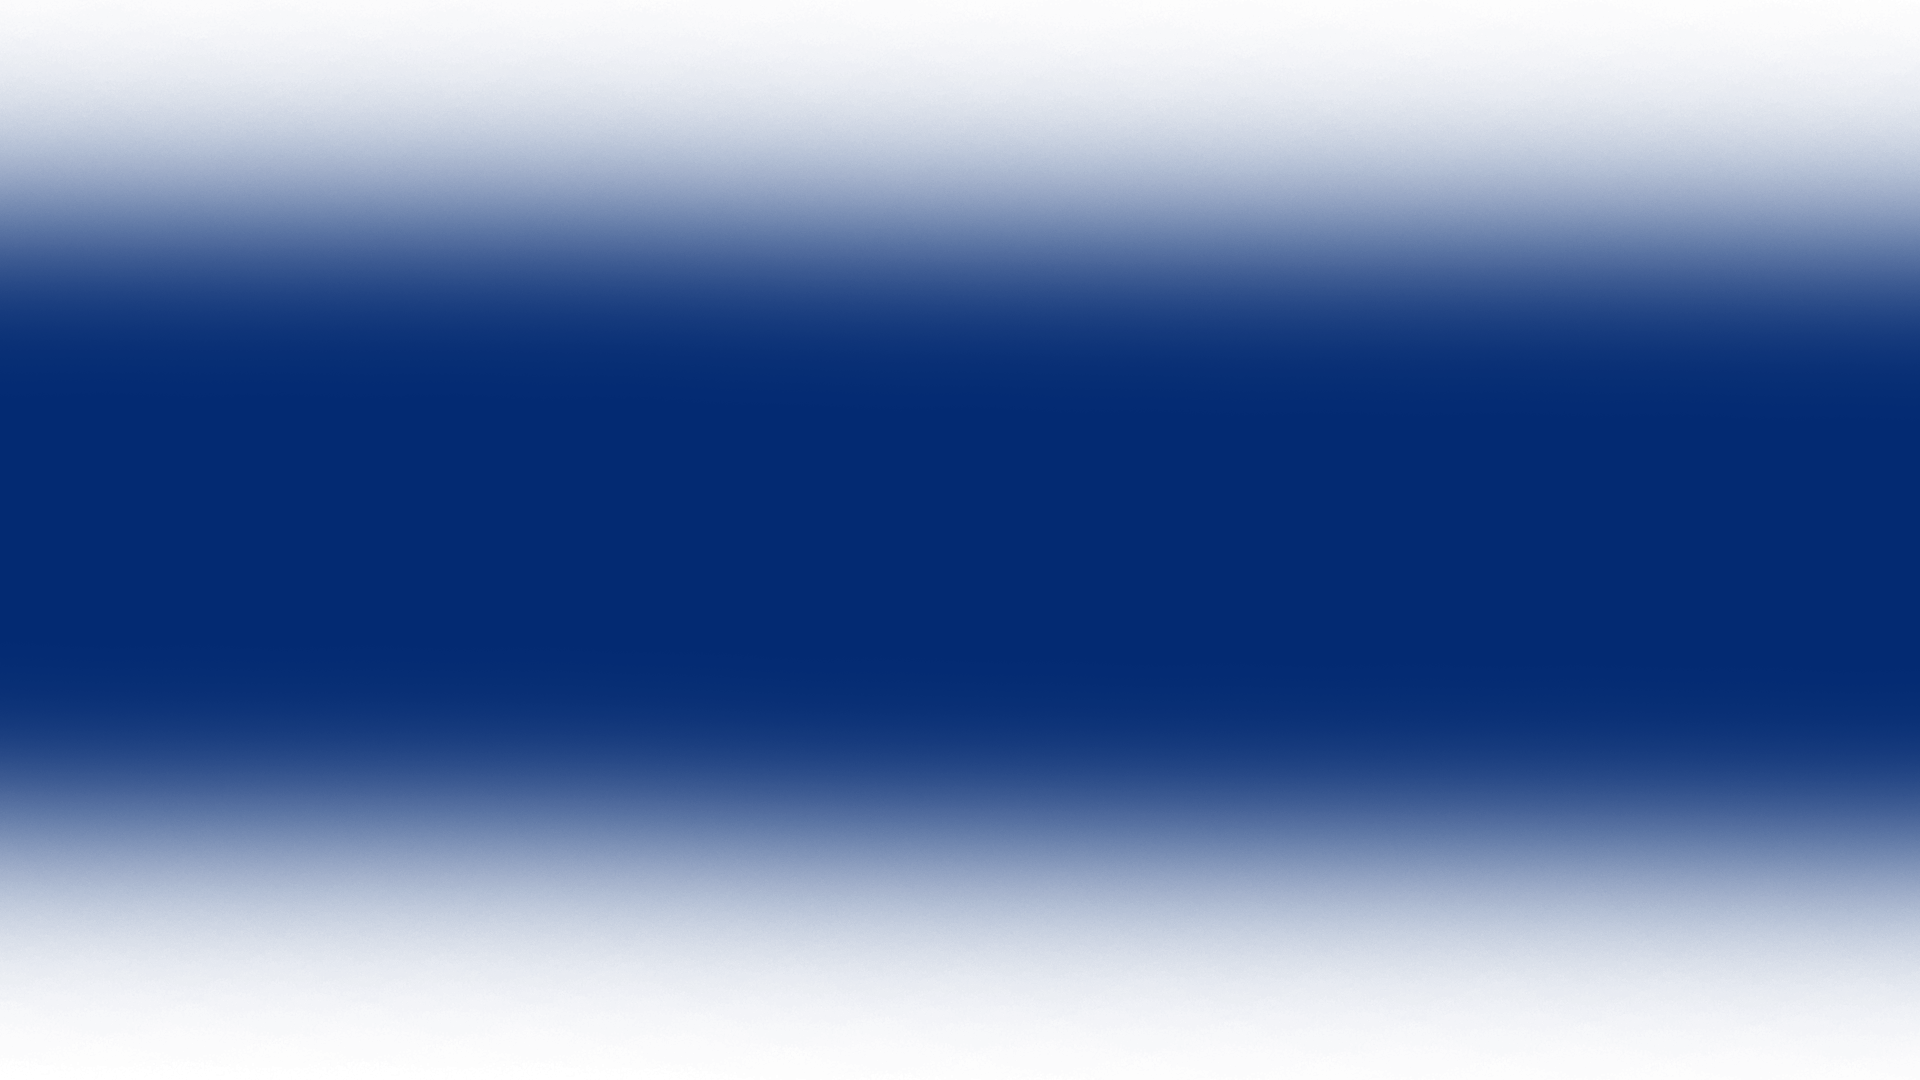 Blue Transparent Gradient, Linear